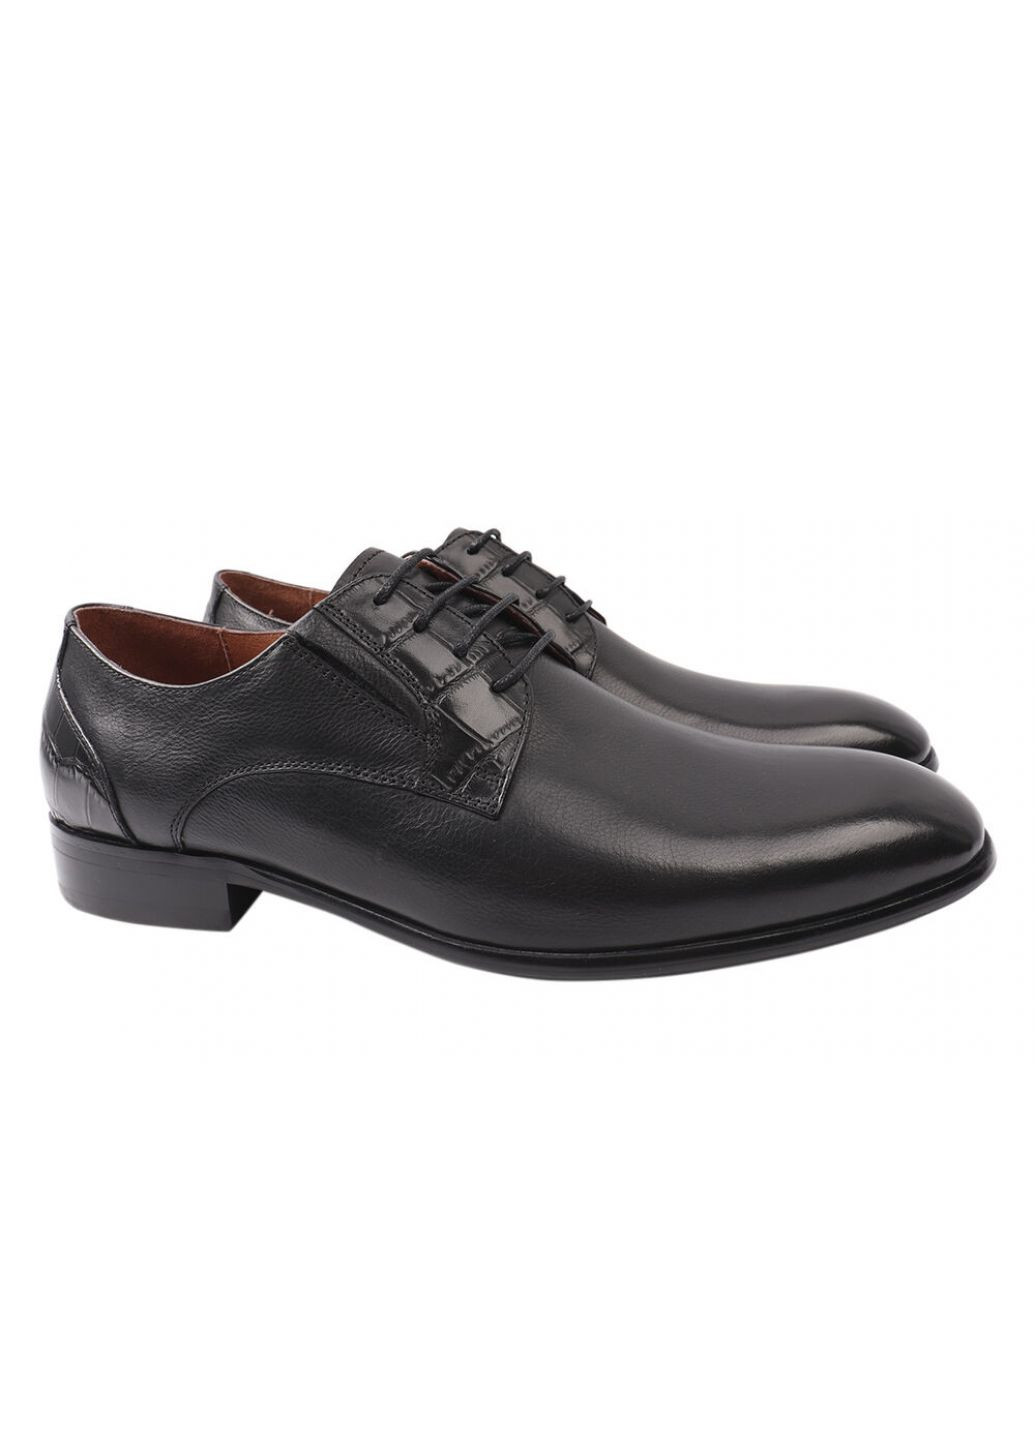 Черные туфли мужские из натуральной кожи, на низком ходу, на шнуровке, черные, Anemone